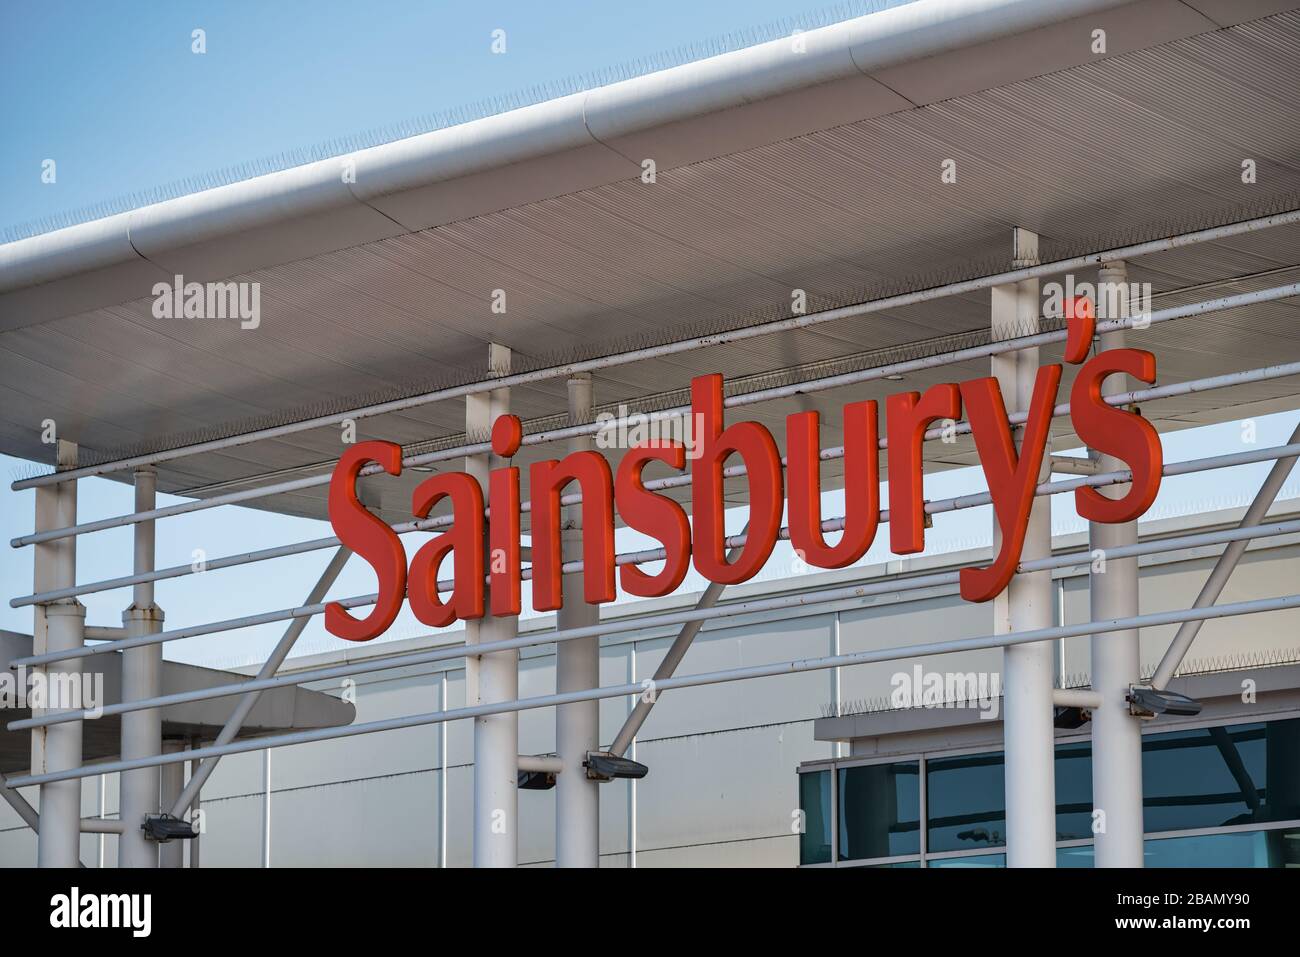 Derry, Großbritannien - 28. März 2020: Das Schild für Sainsbury's Supermarket in Großbritannien Stockfoto